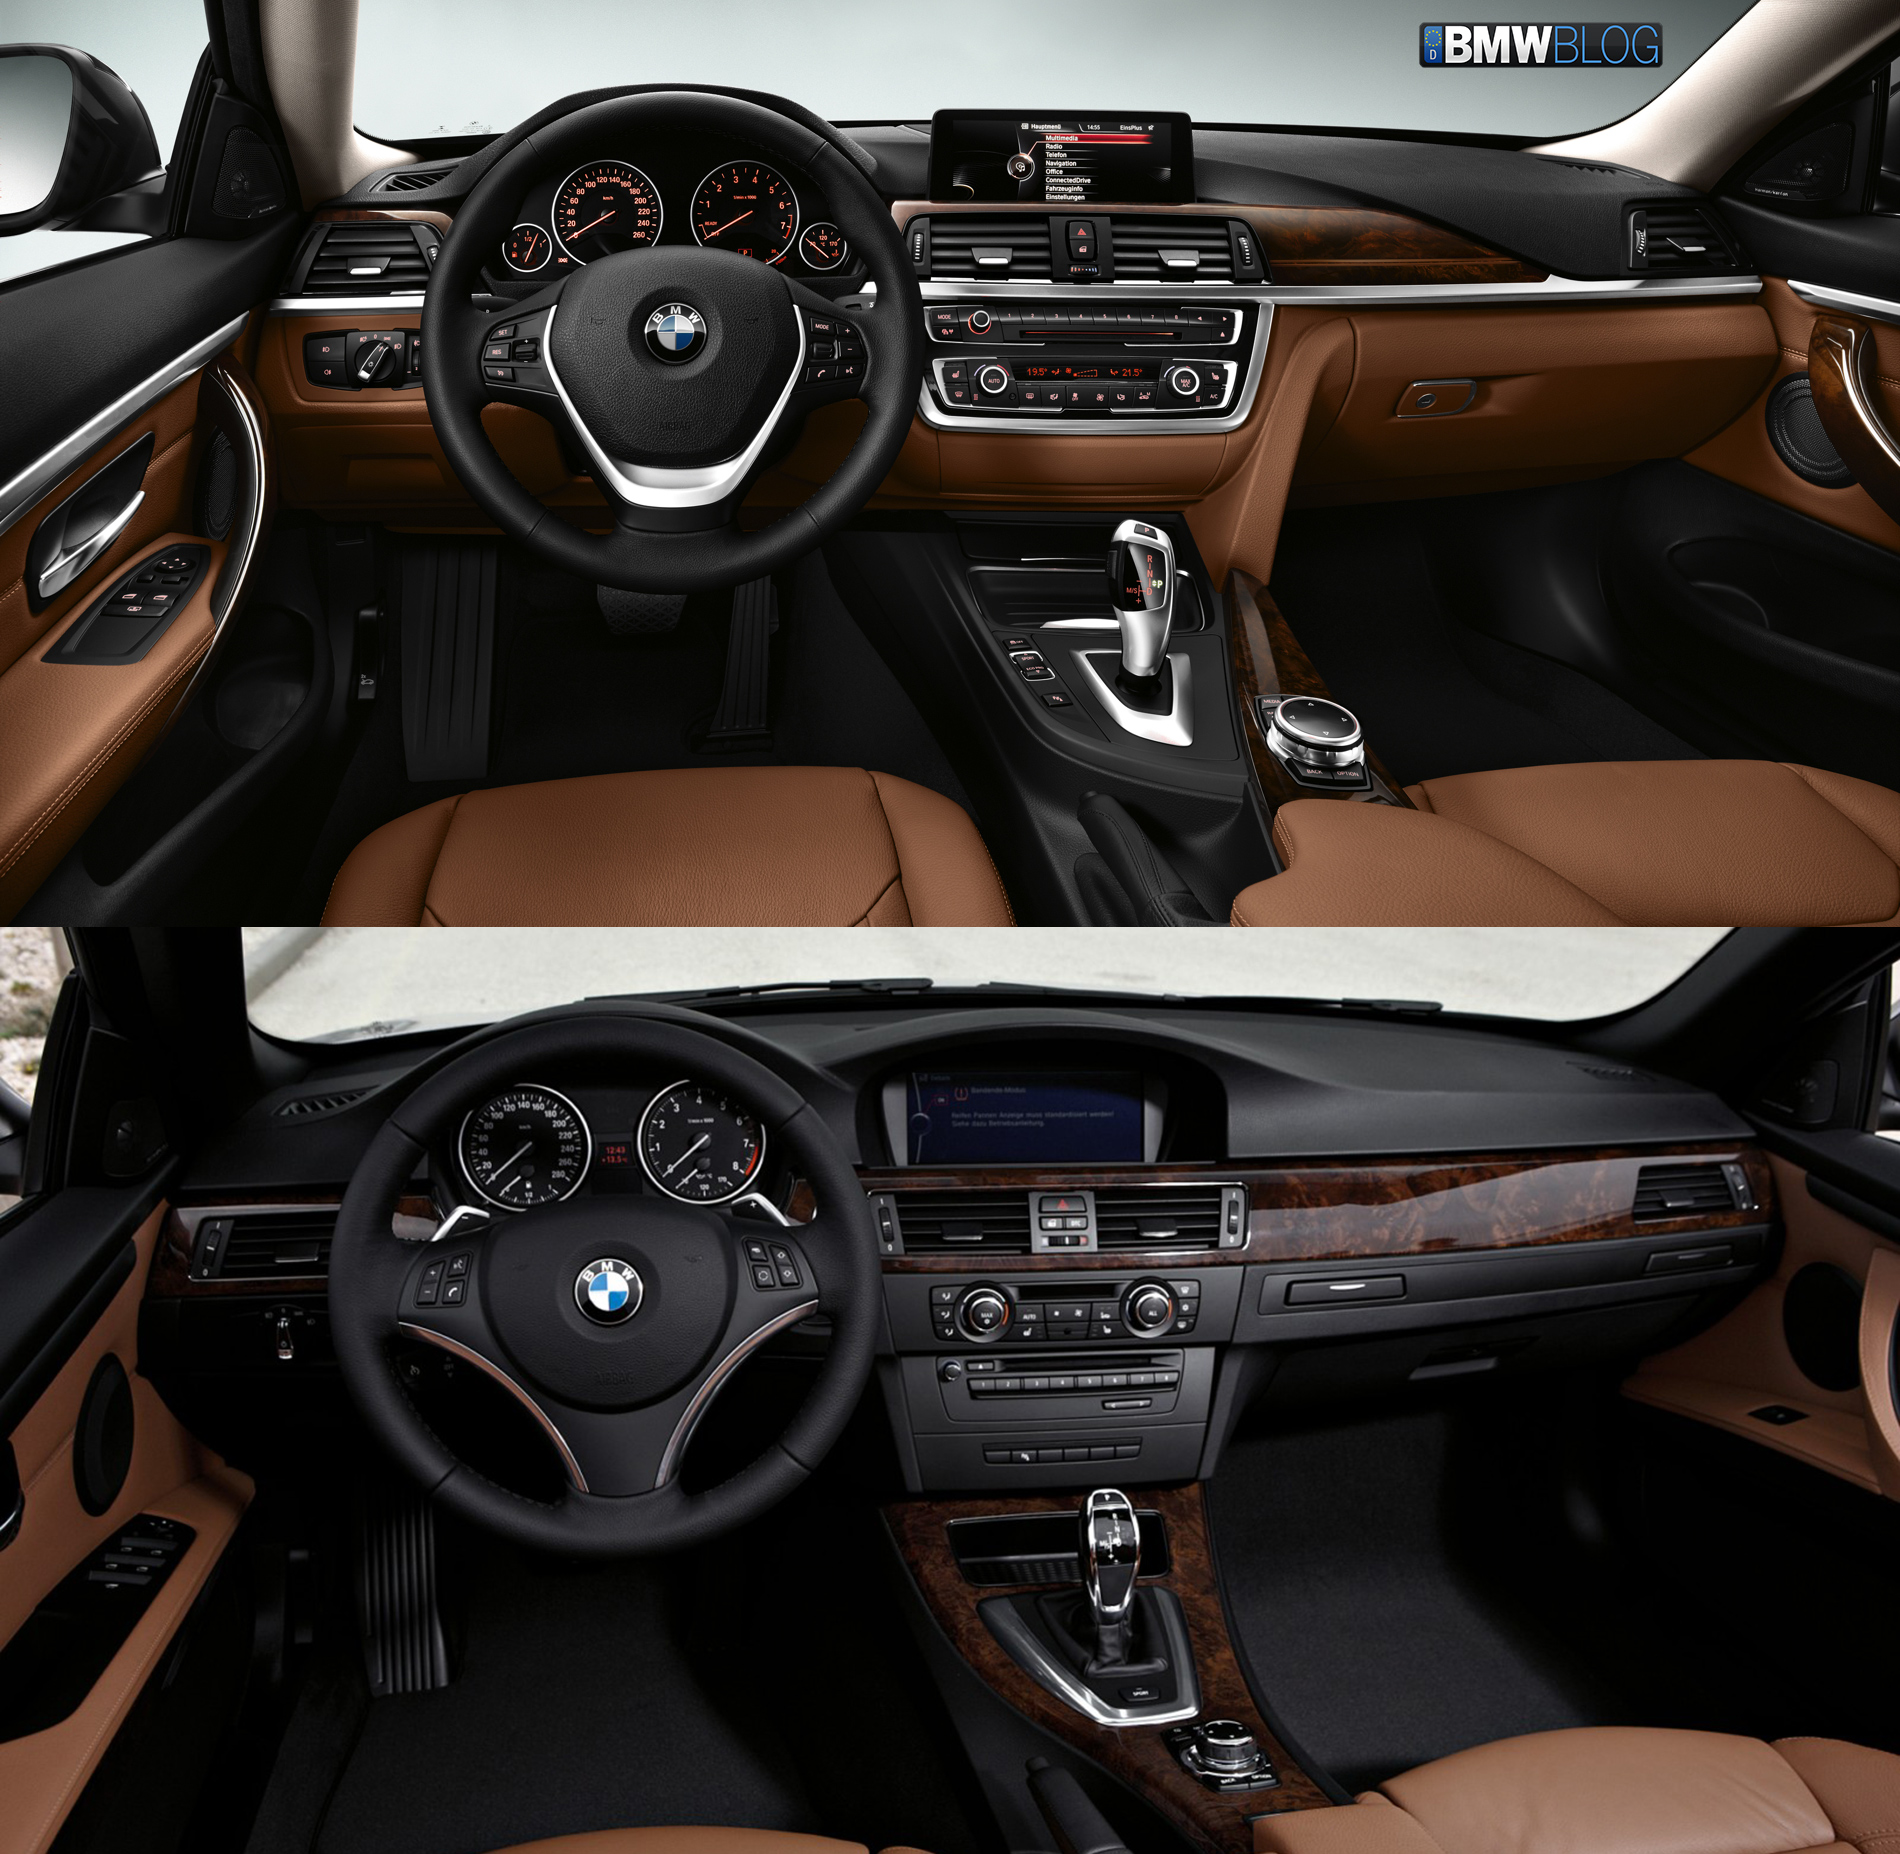 BMW 4 Series Coupe vs. E92 3 Series Coupe Photo Comparison